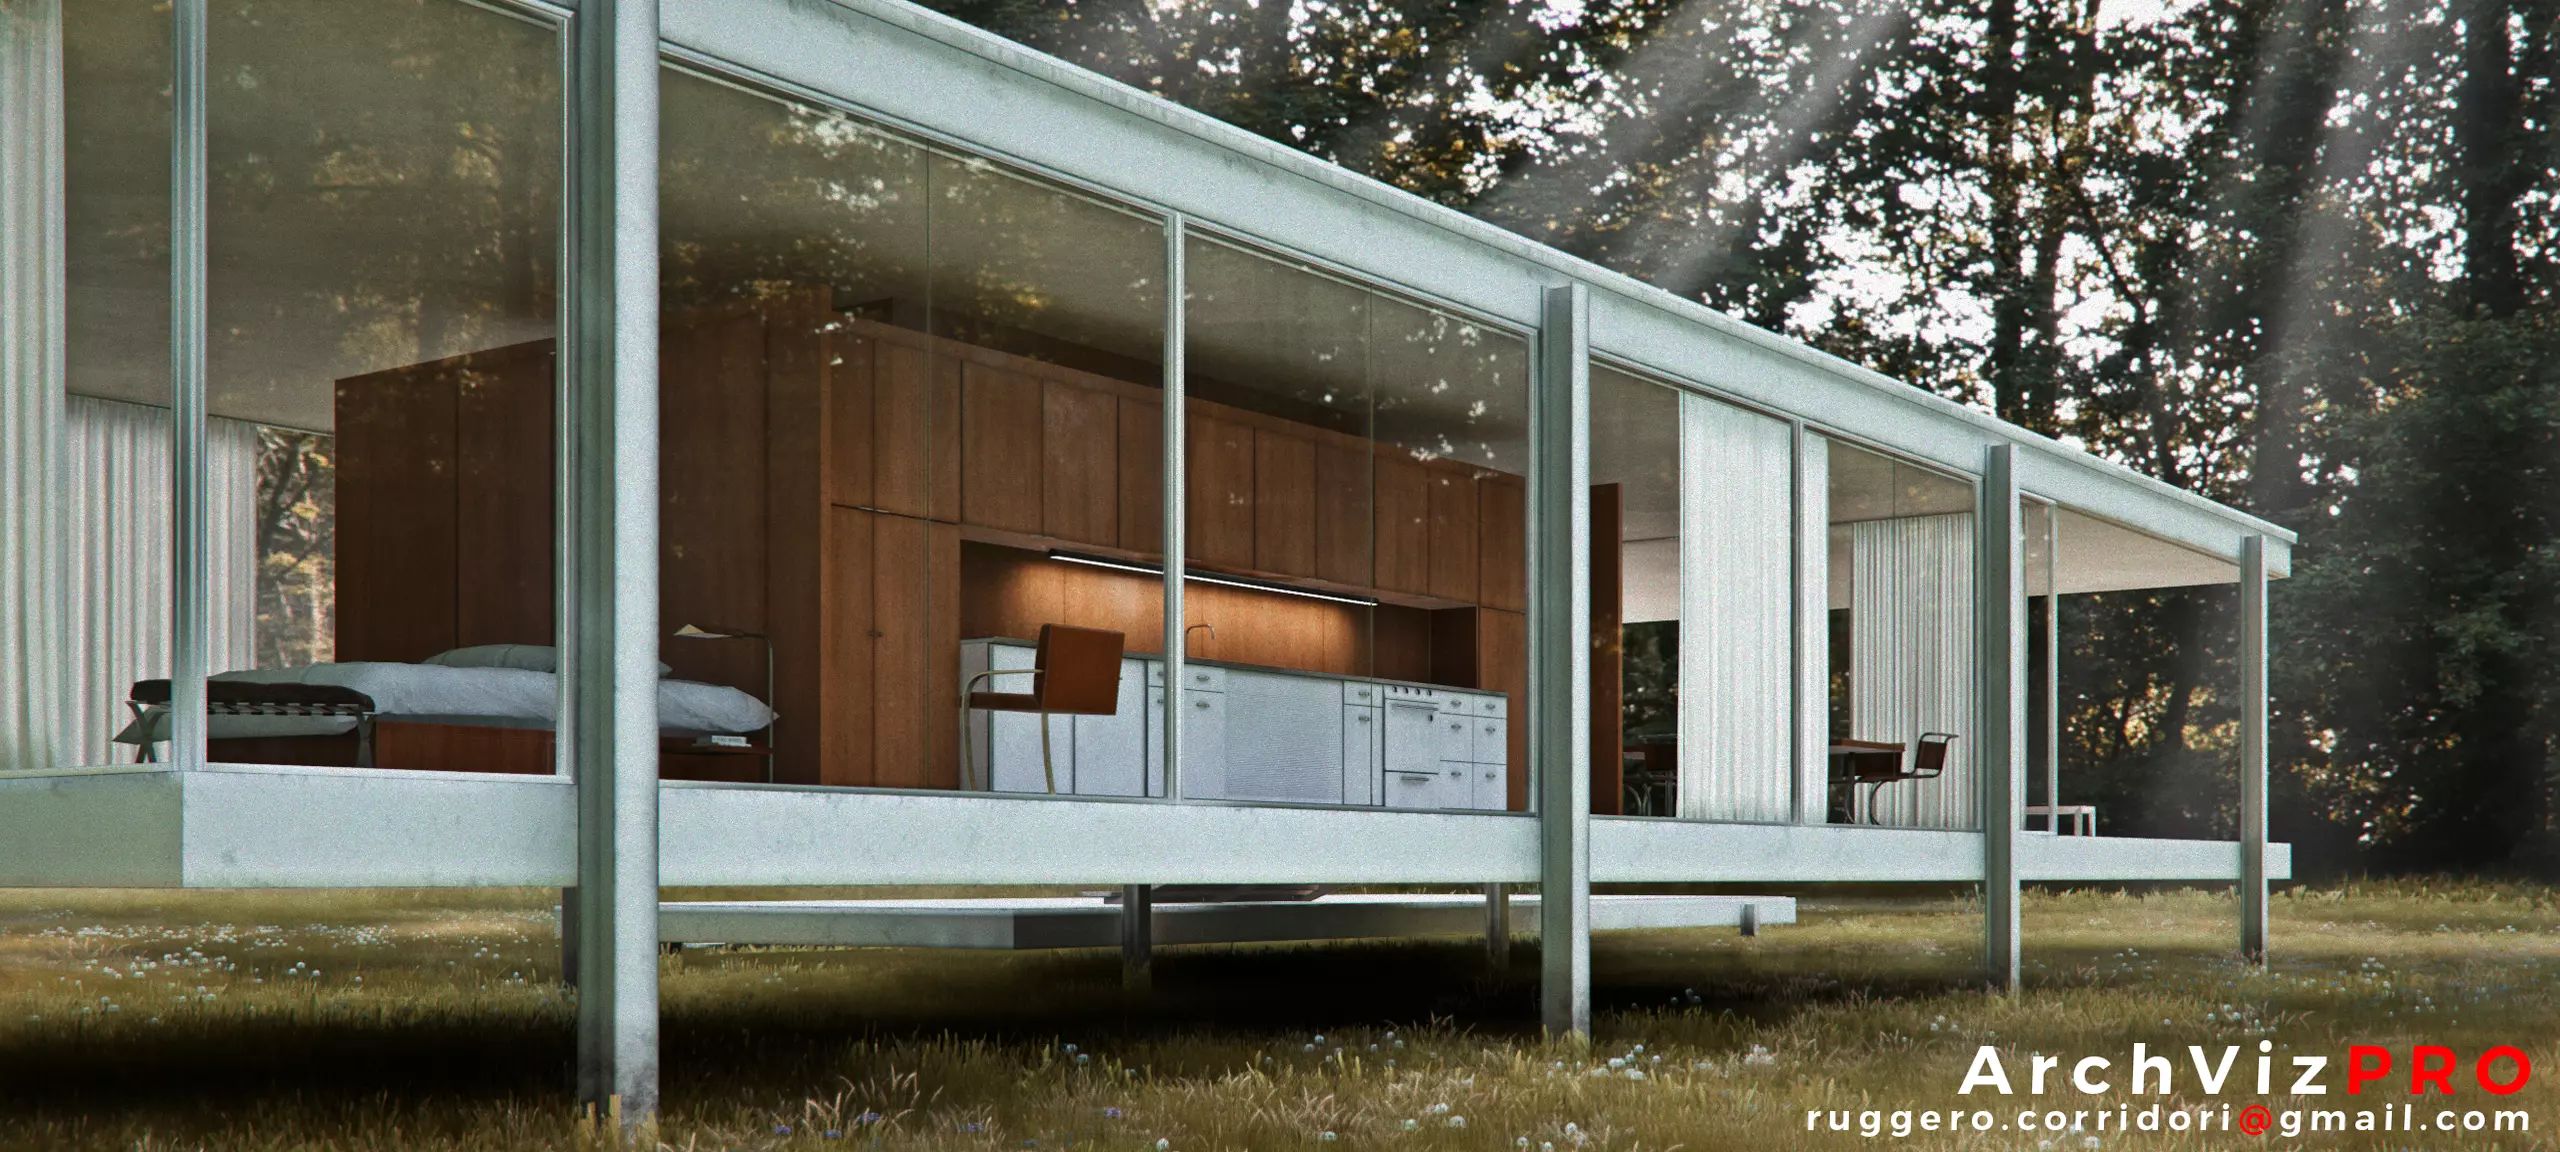 مدل سه بعدی خانه مدرن برای یونیتی - 23